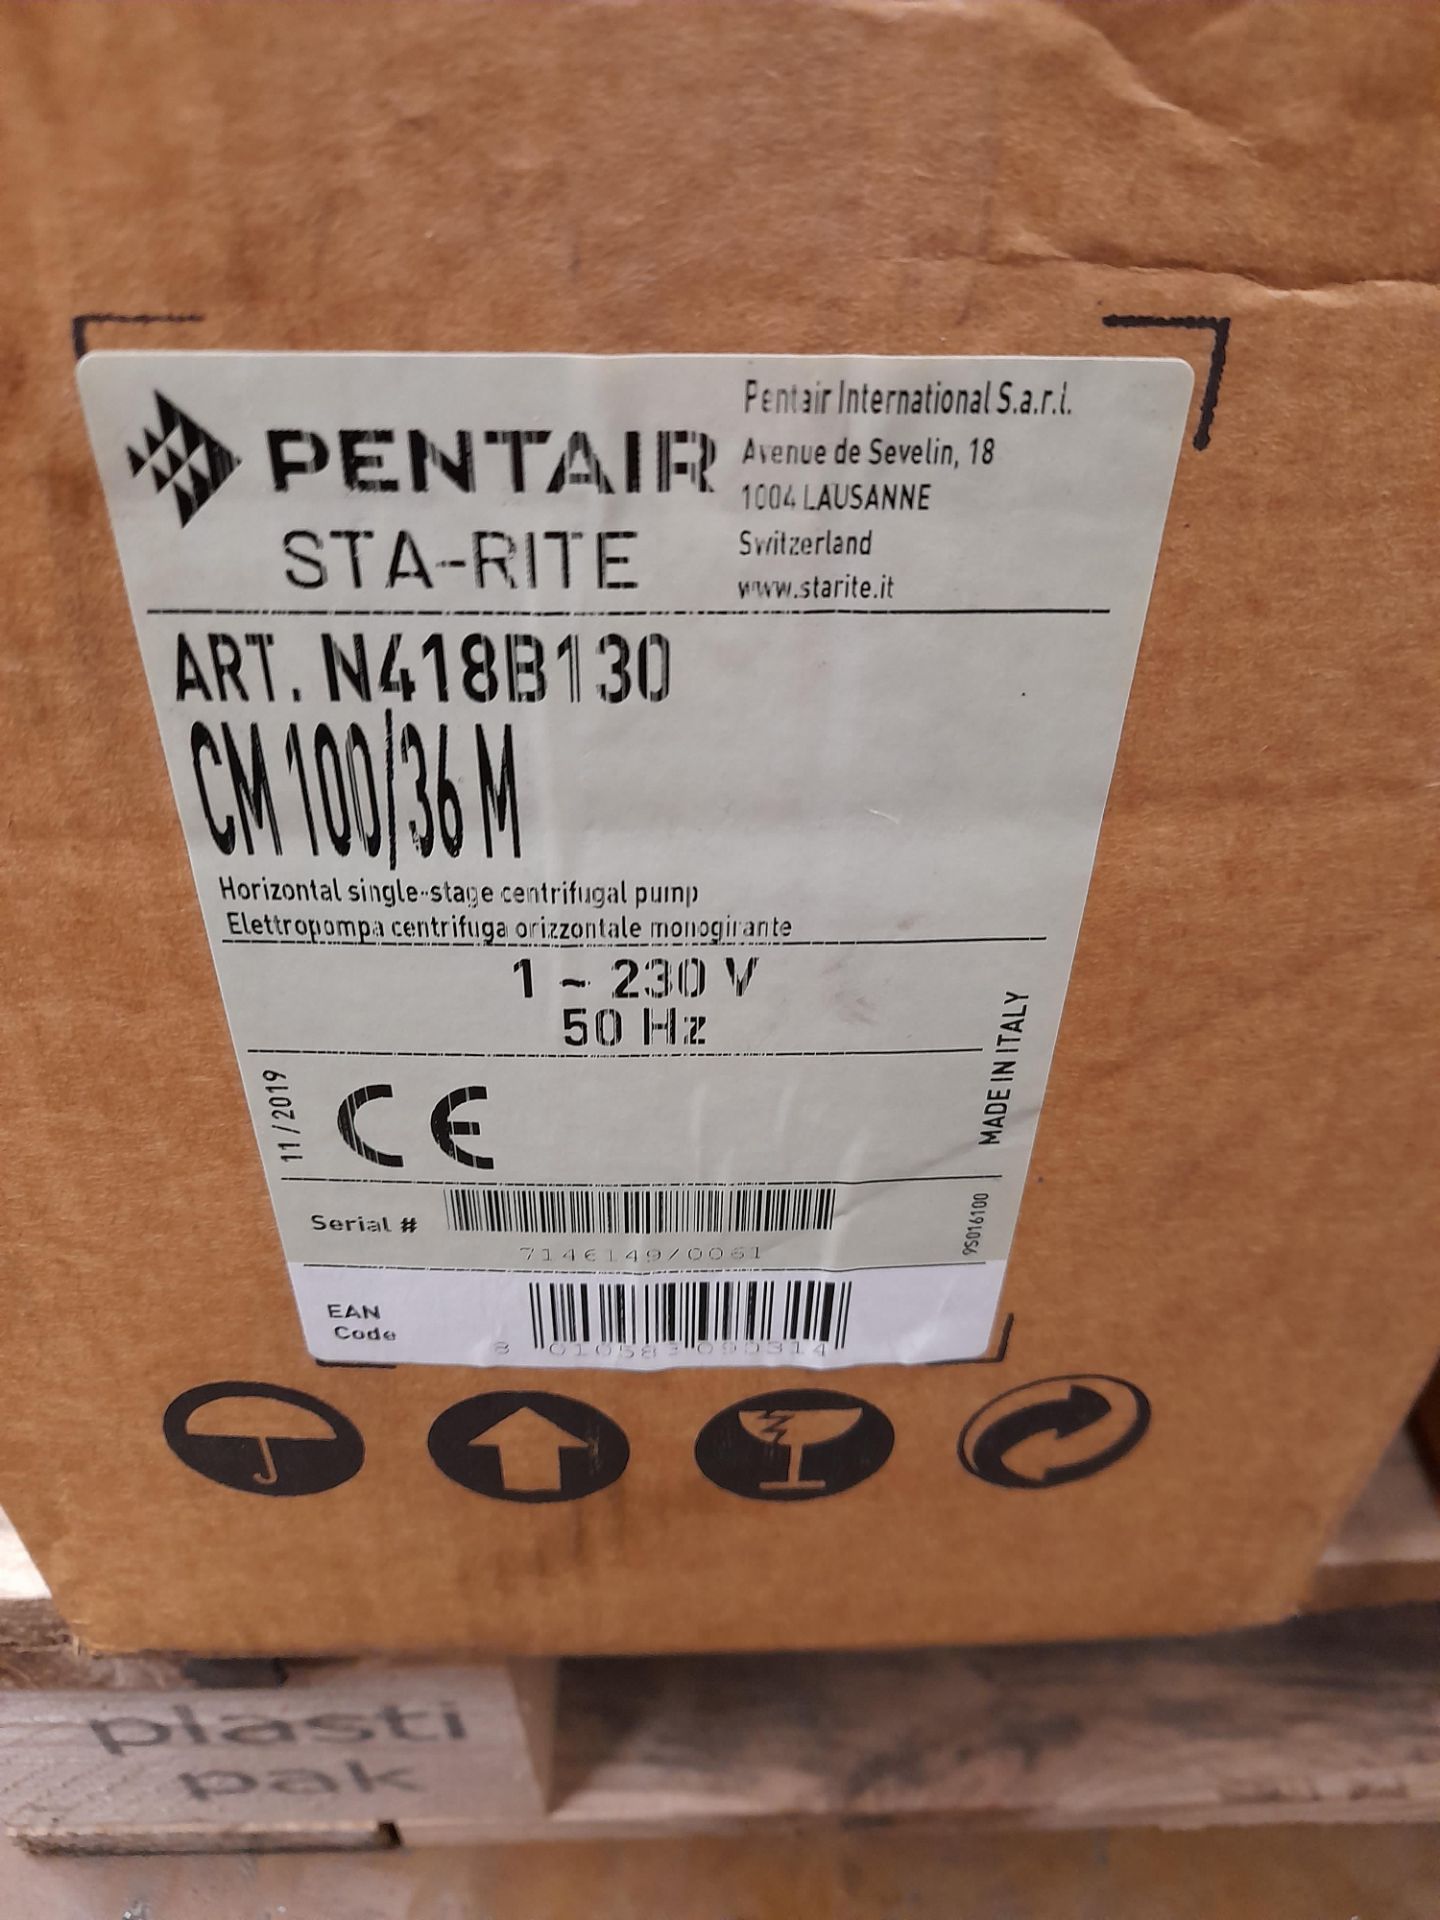 2 x Pentair Sta-Rite 230Volt ART. N418B130 electric motors (Boxed) - Image 2 of 2